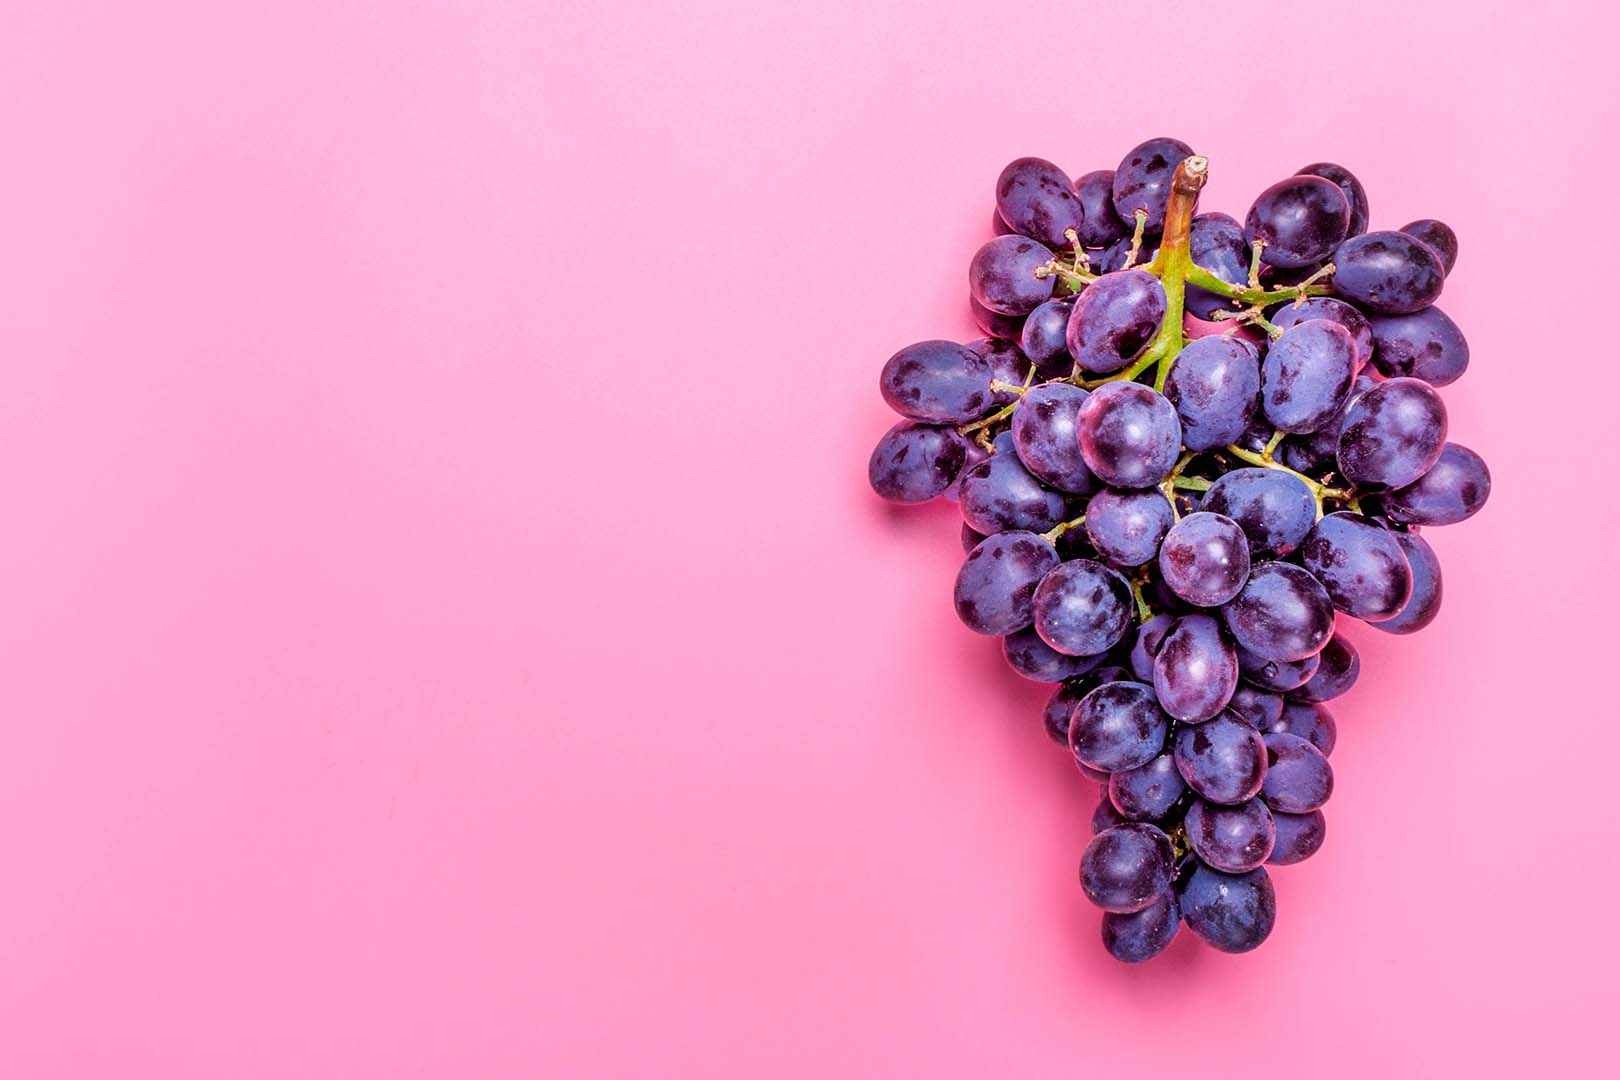 manfaat buah anggur untuk ibu hamil